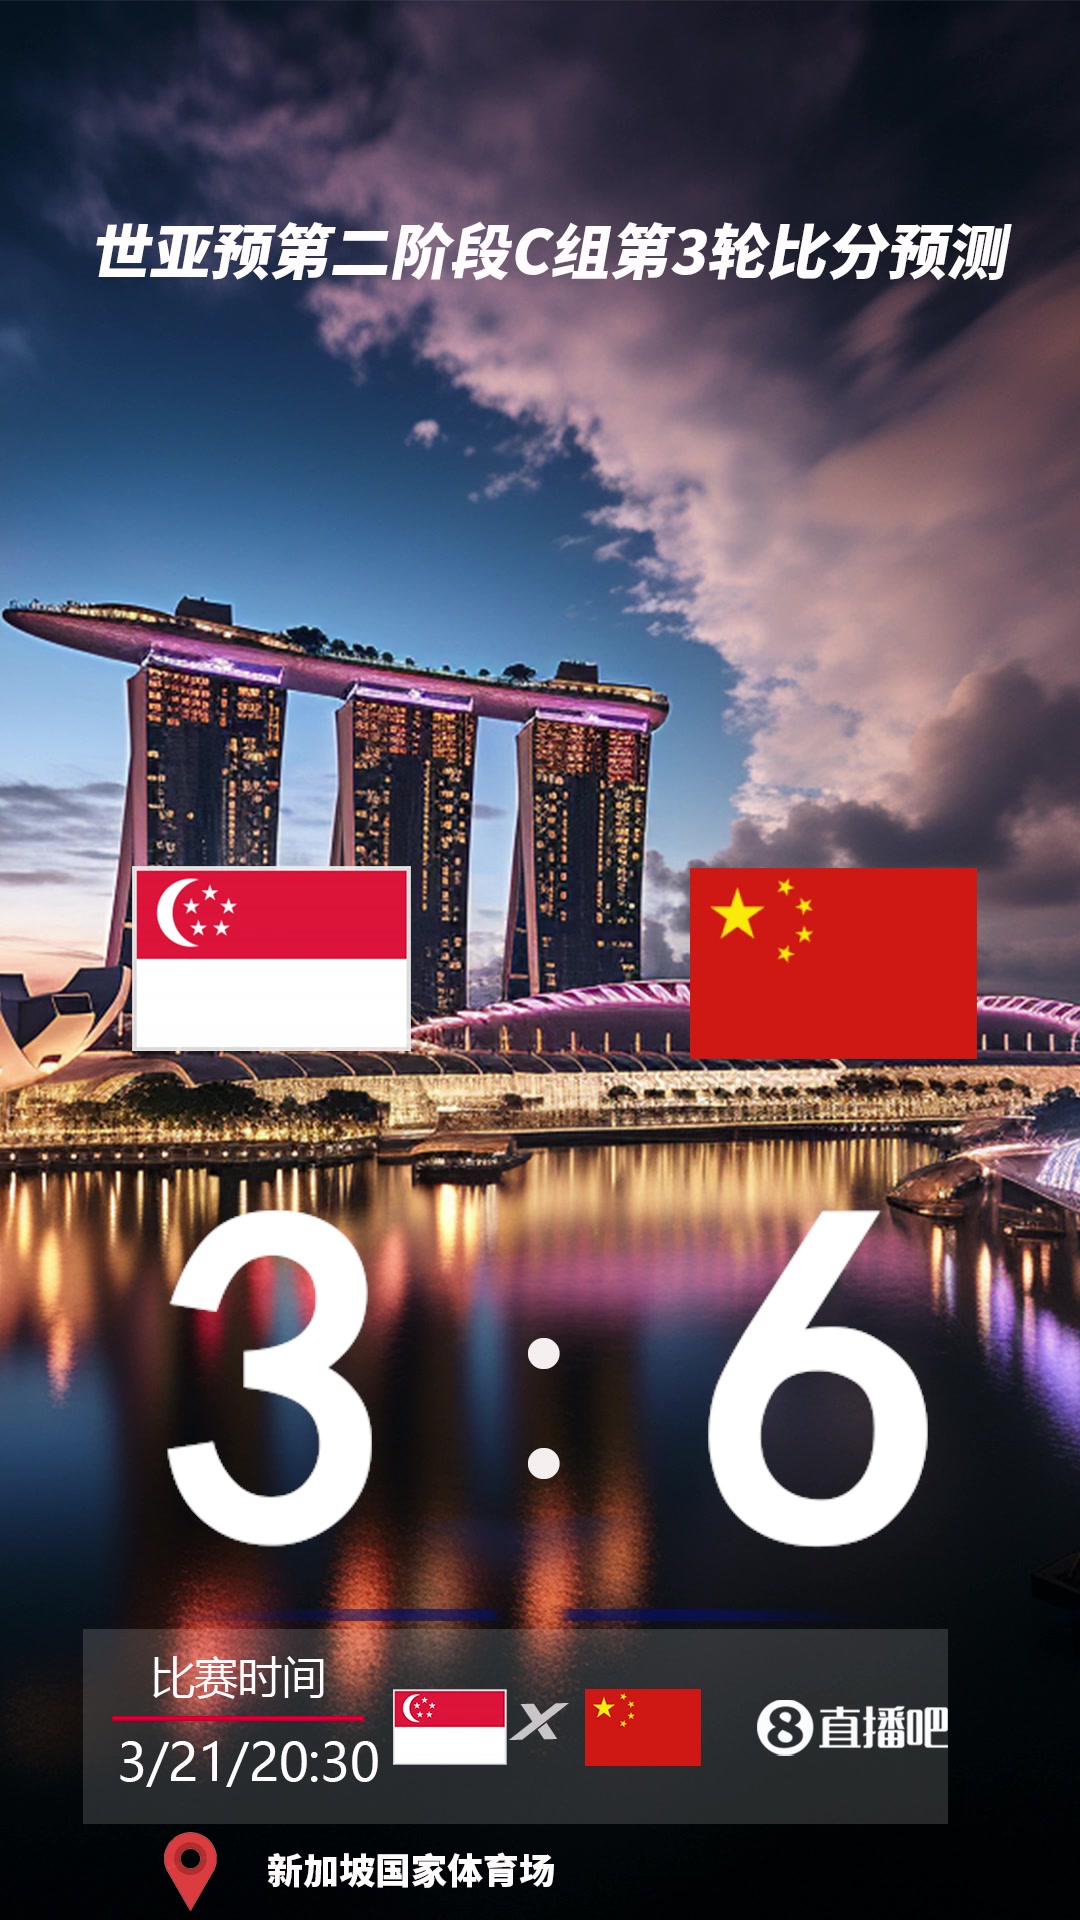 关键一战！截图预测新加坡vs国足比分